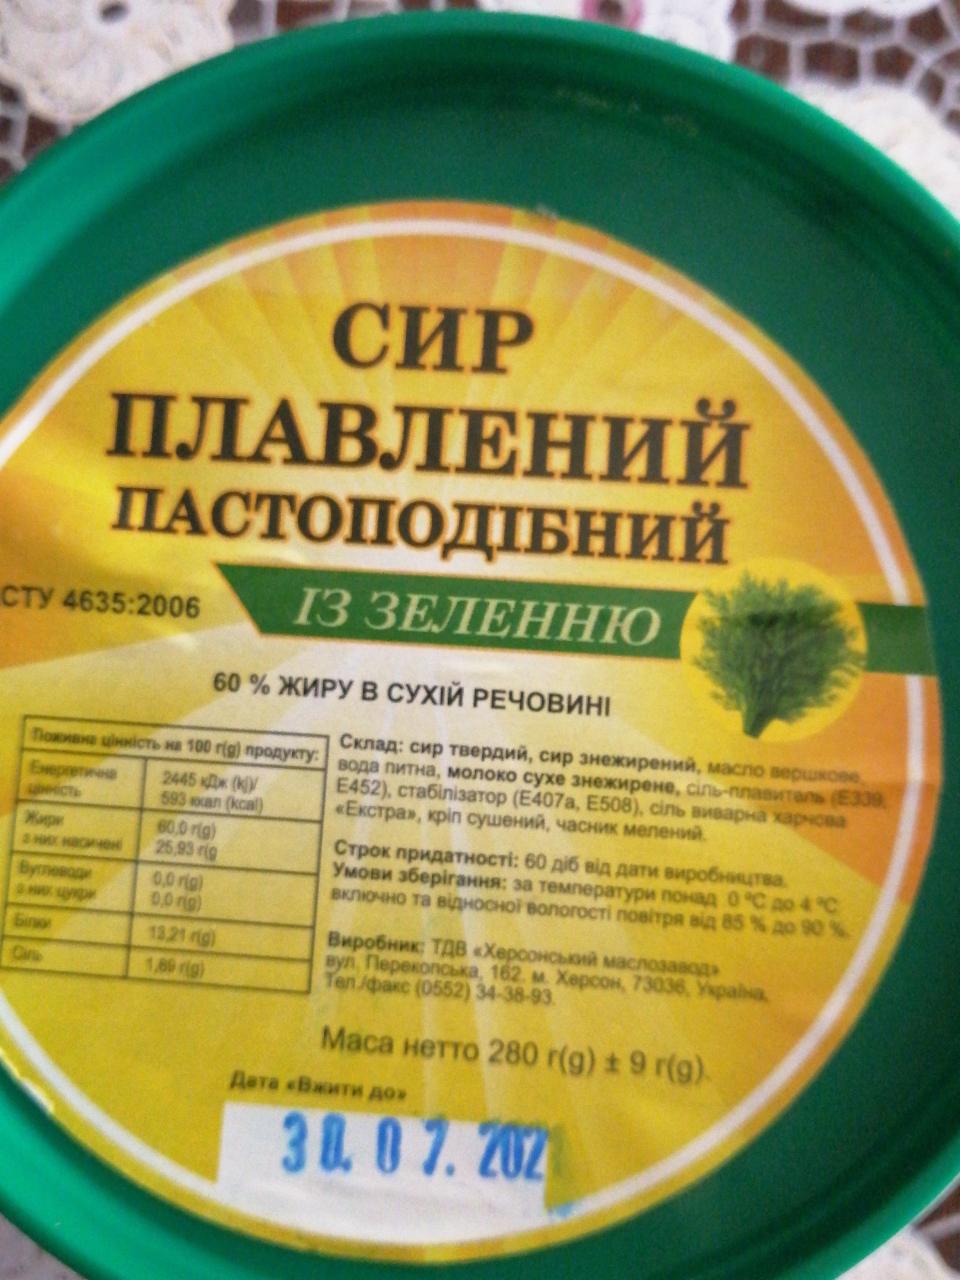 Фото - сыр плавленый пастоподобный с зеленью Херсонский маслозавод